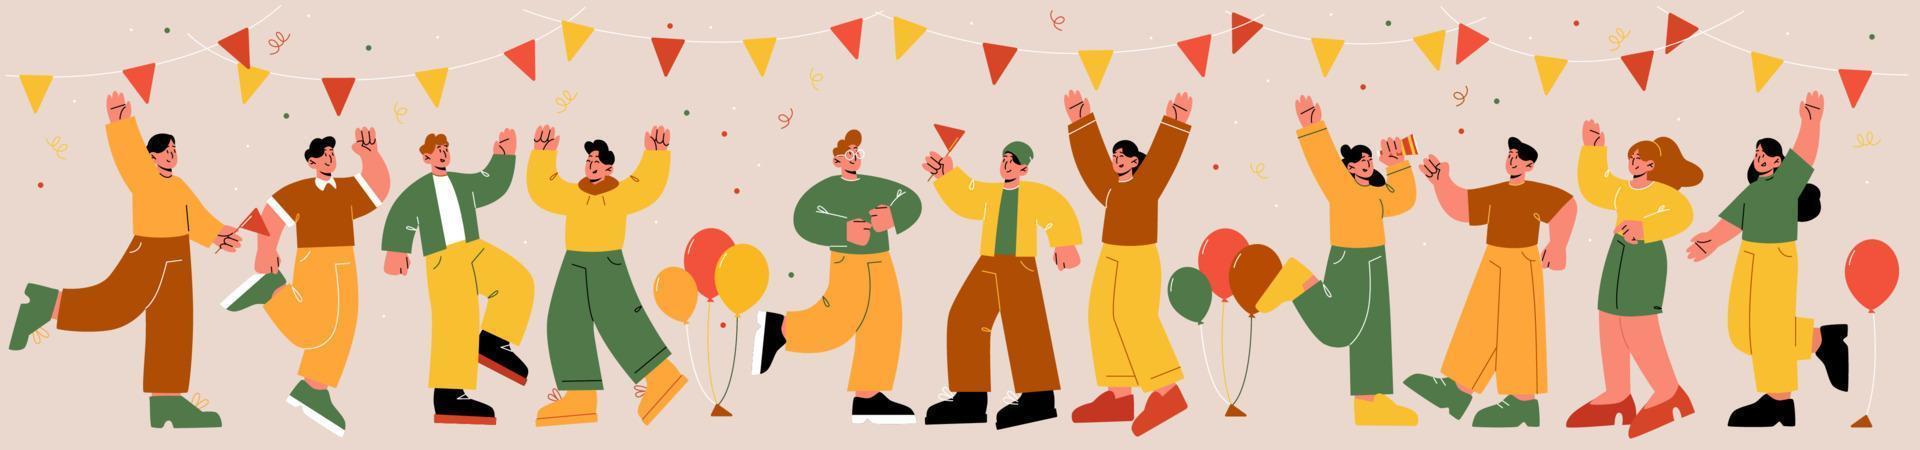 glückliche menschen feiern party unternehmensspaß urlaub vektor